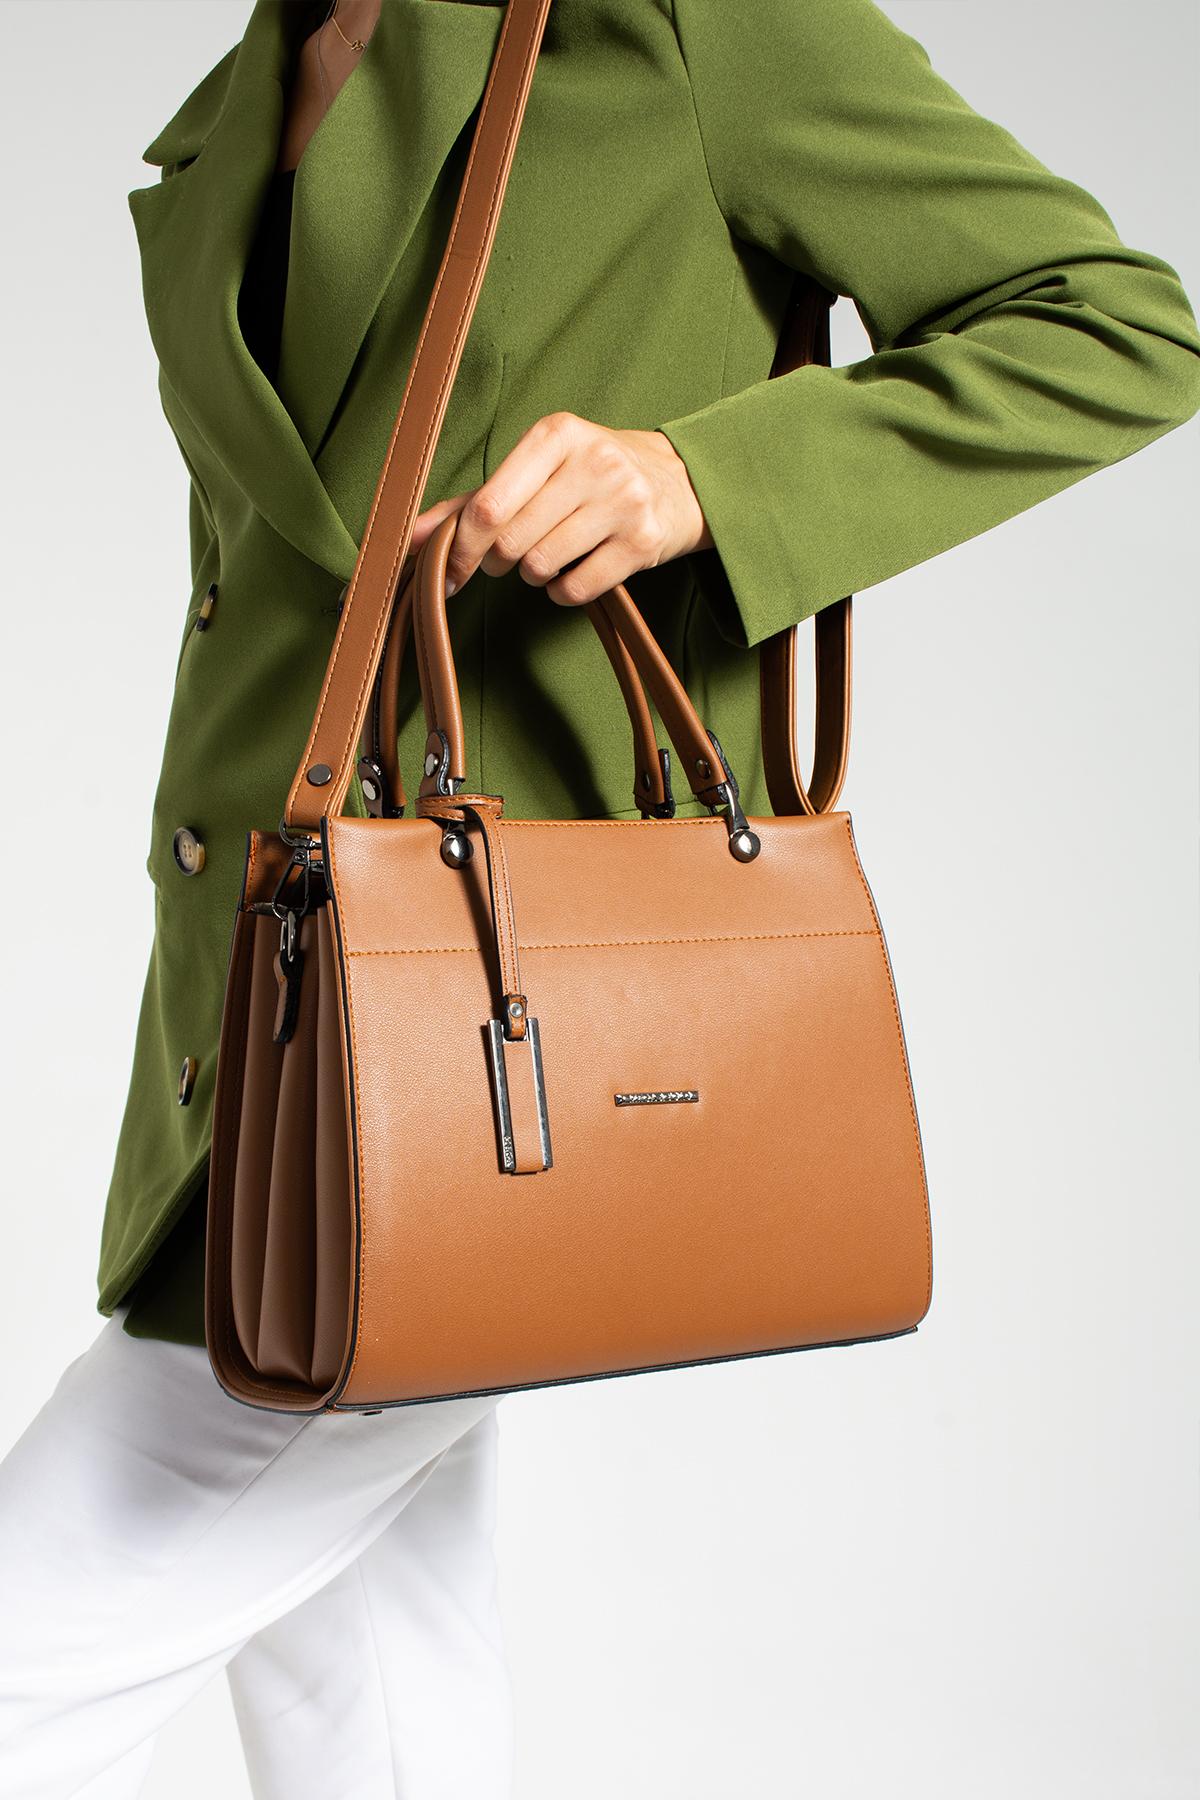 YOGII Fashion Bag Kunstleer voor dames, een kwaliteit schoudertas met kruispatroon, ultraluxe Vip